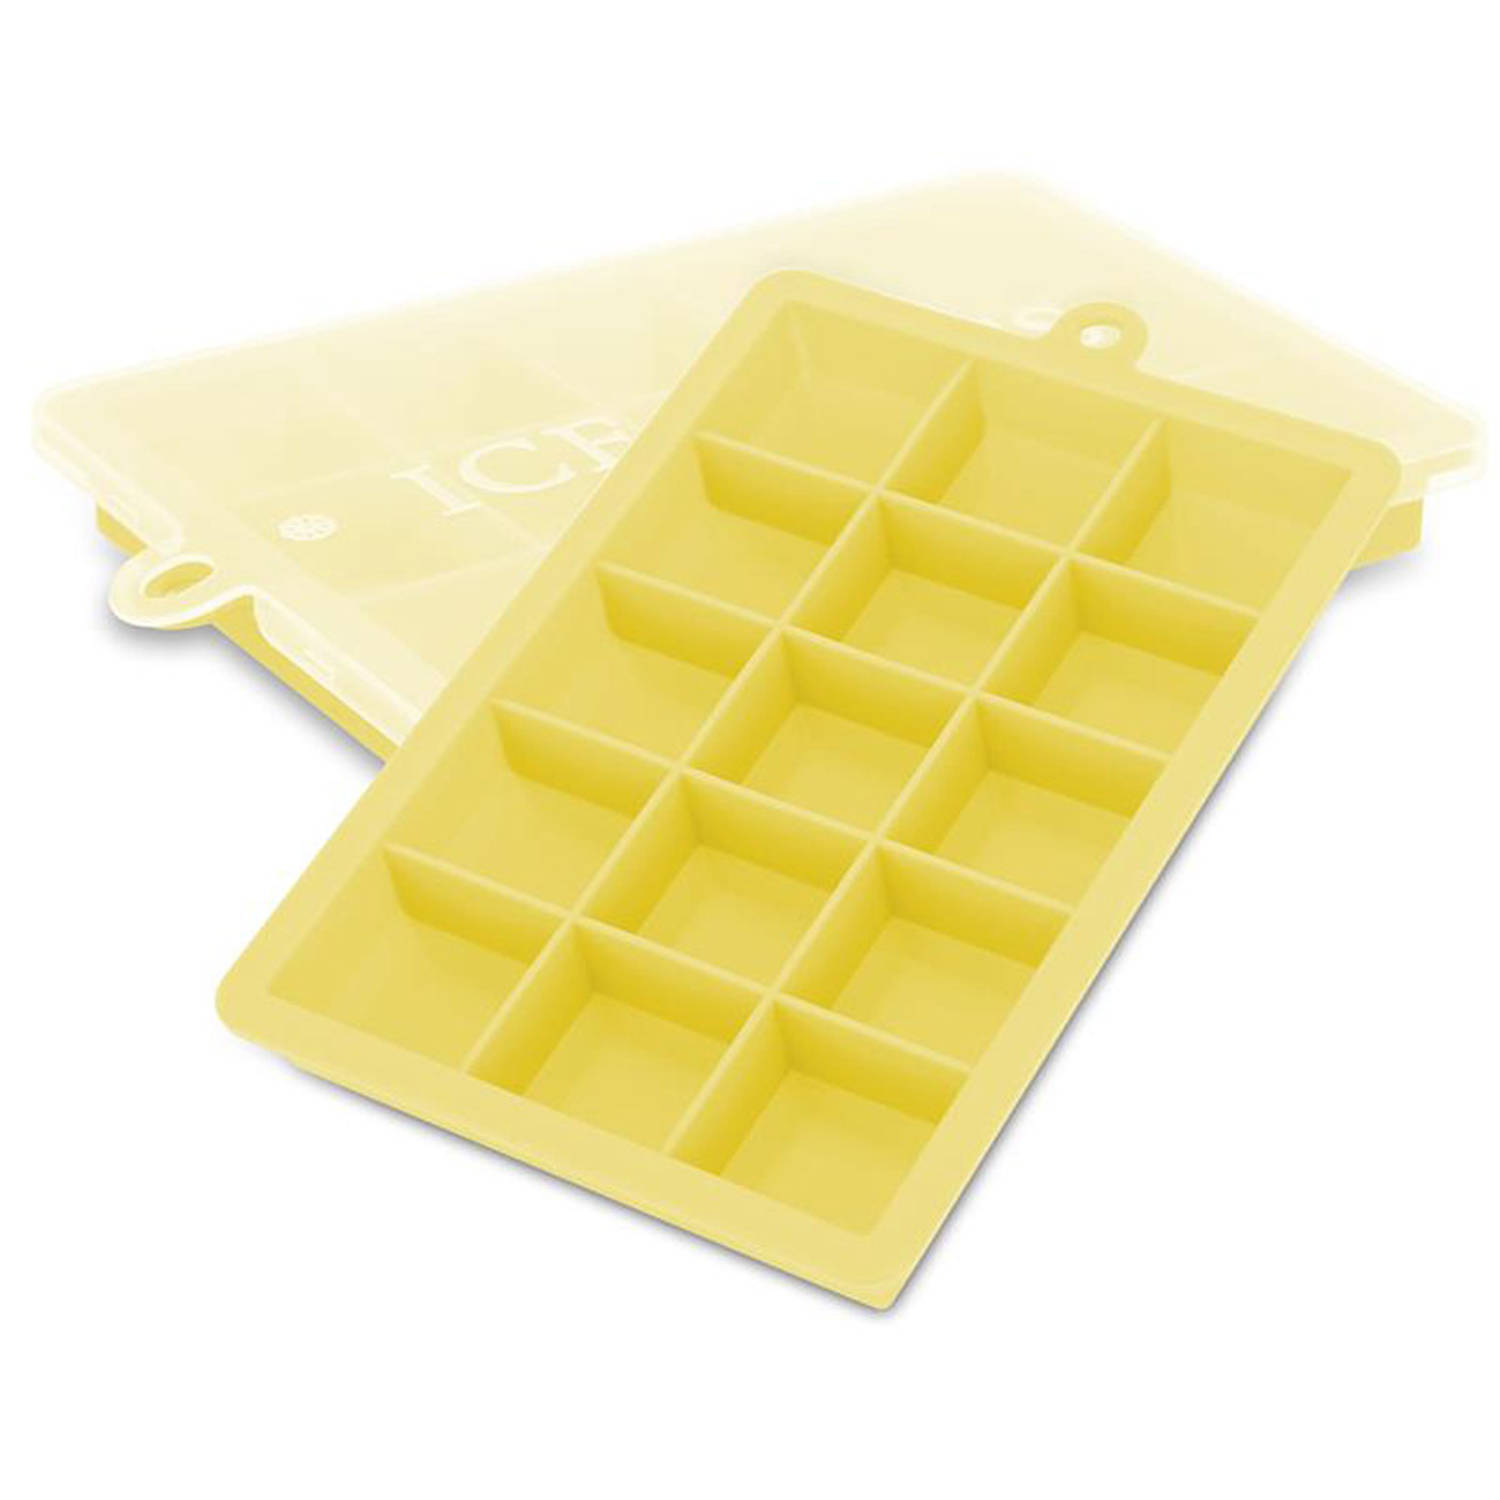 INTIRILIFE 2 x ijsblokjesvormen in geel, set van 2 à 15 vakken, siliconen vormen met deksel, flexibele ijsblokjeshouder, afsluitbaar voor ijs, babyvoeding en meer